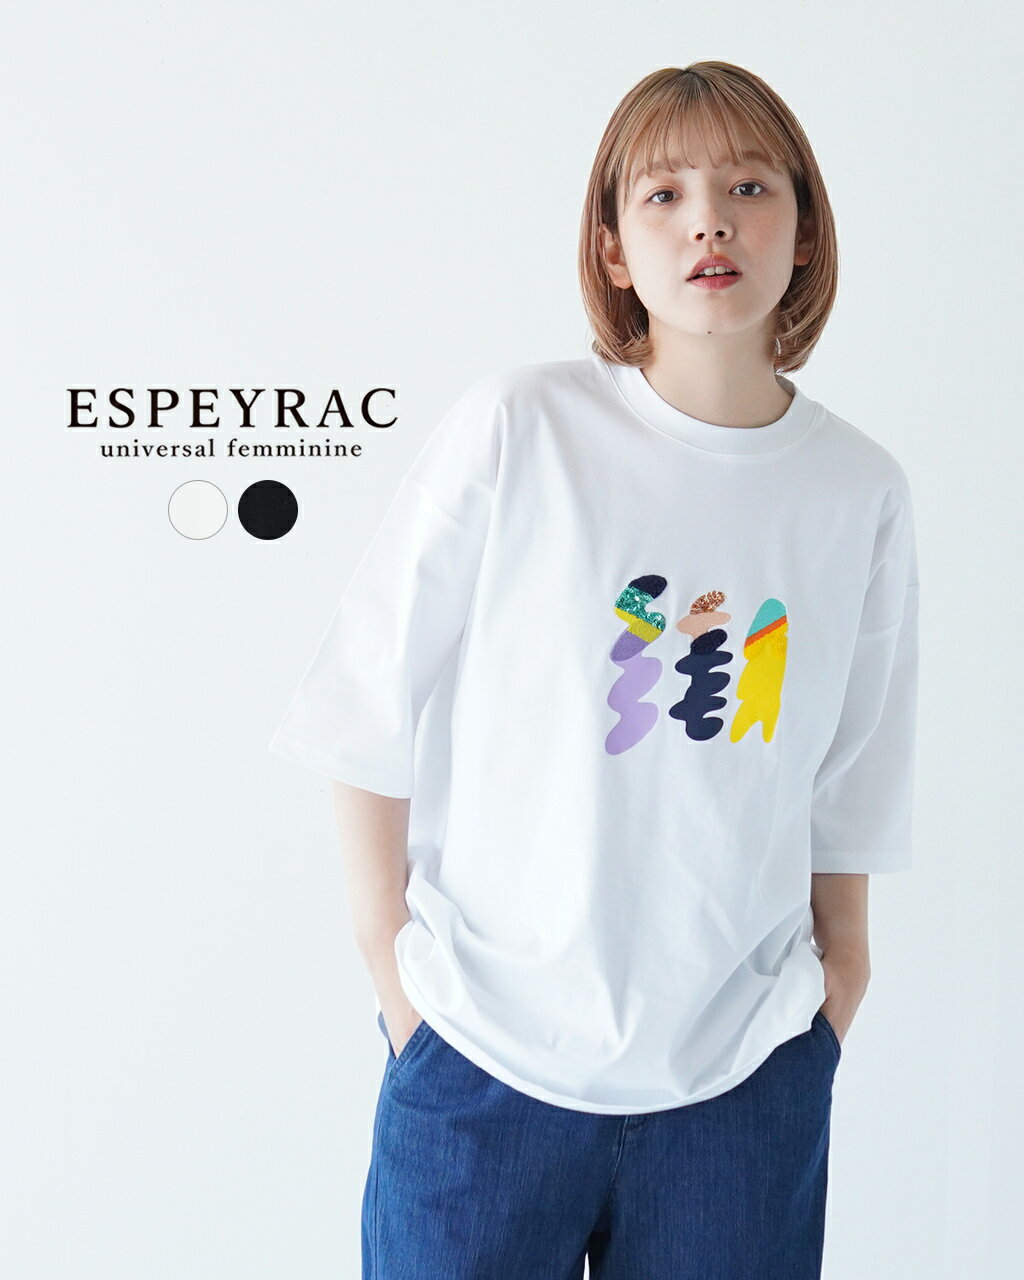 エスペラック Espeyrac スウェーイング ロゴ Tシャツ swaying LOGO-T ロゴT ホワイト ブラック レディース 74210110522